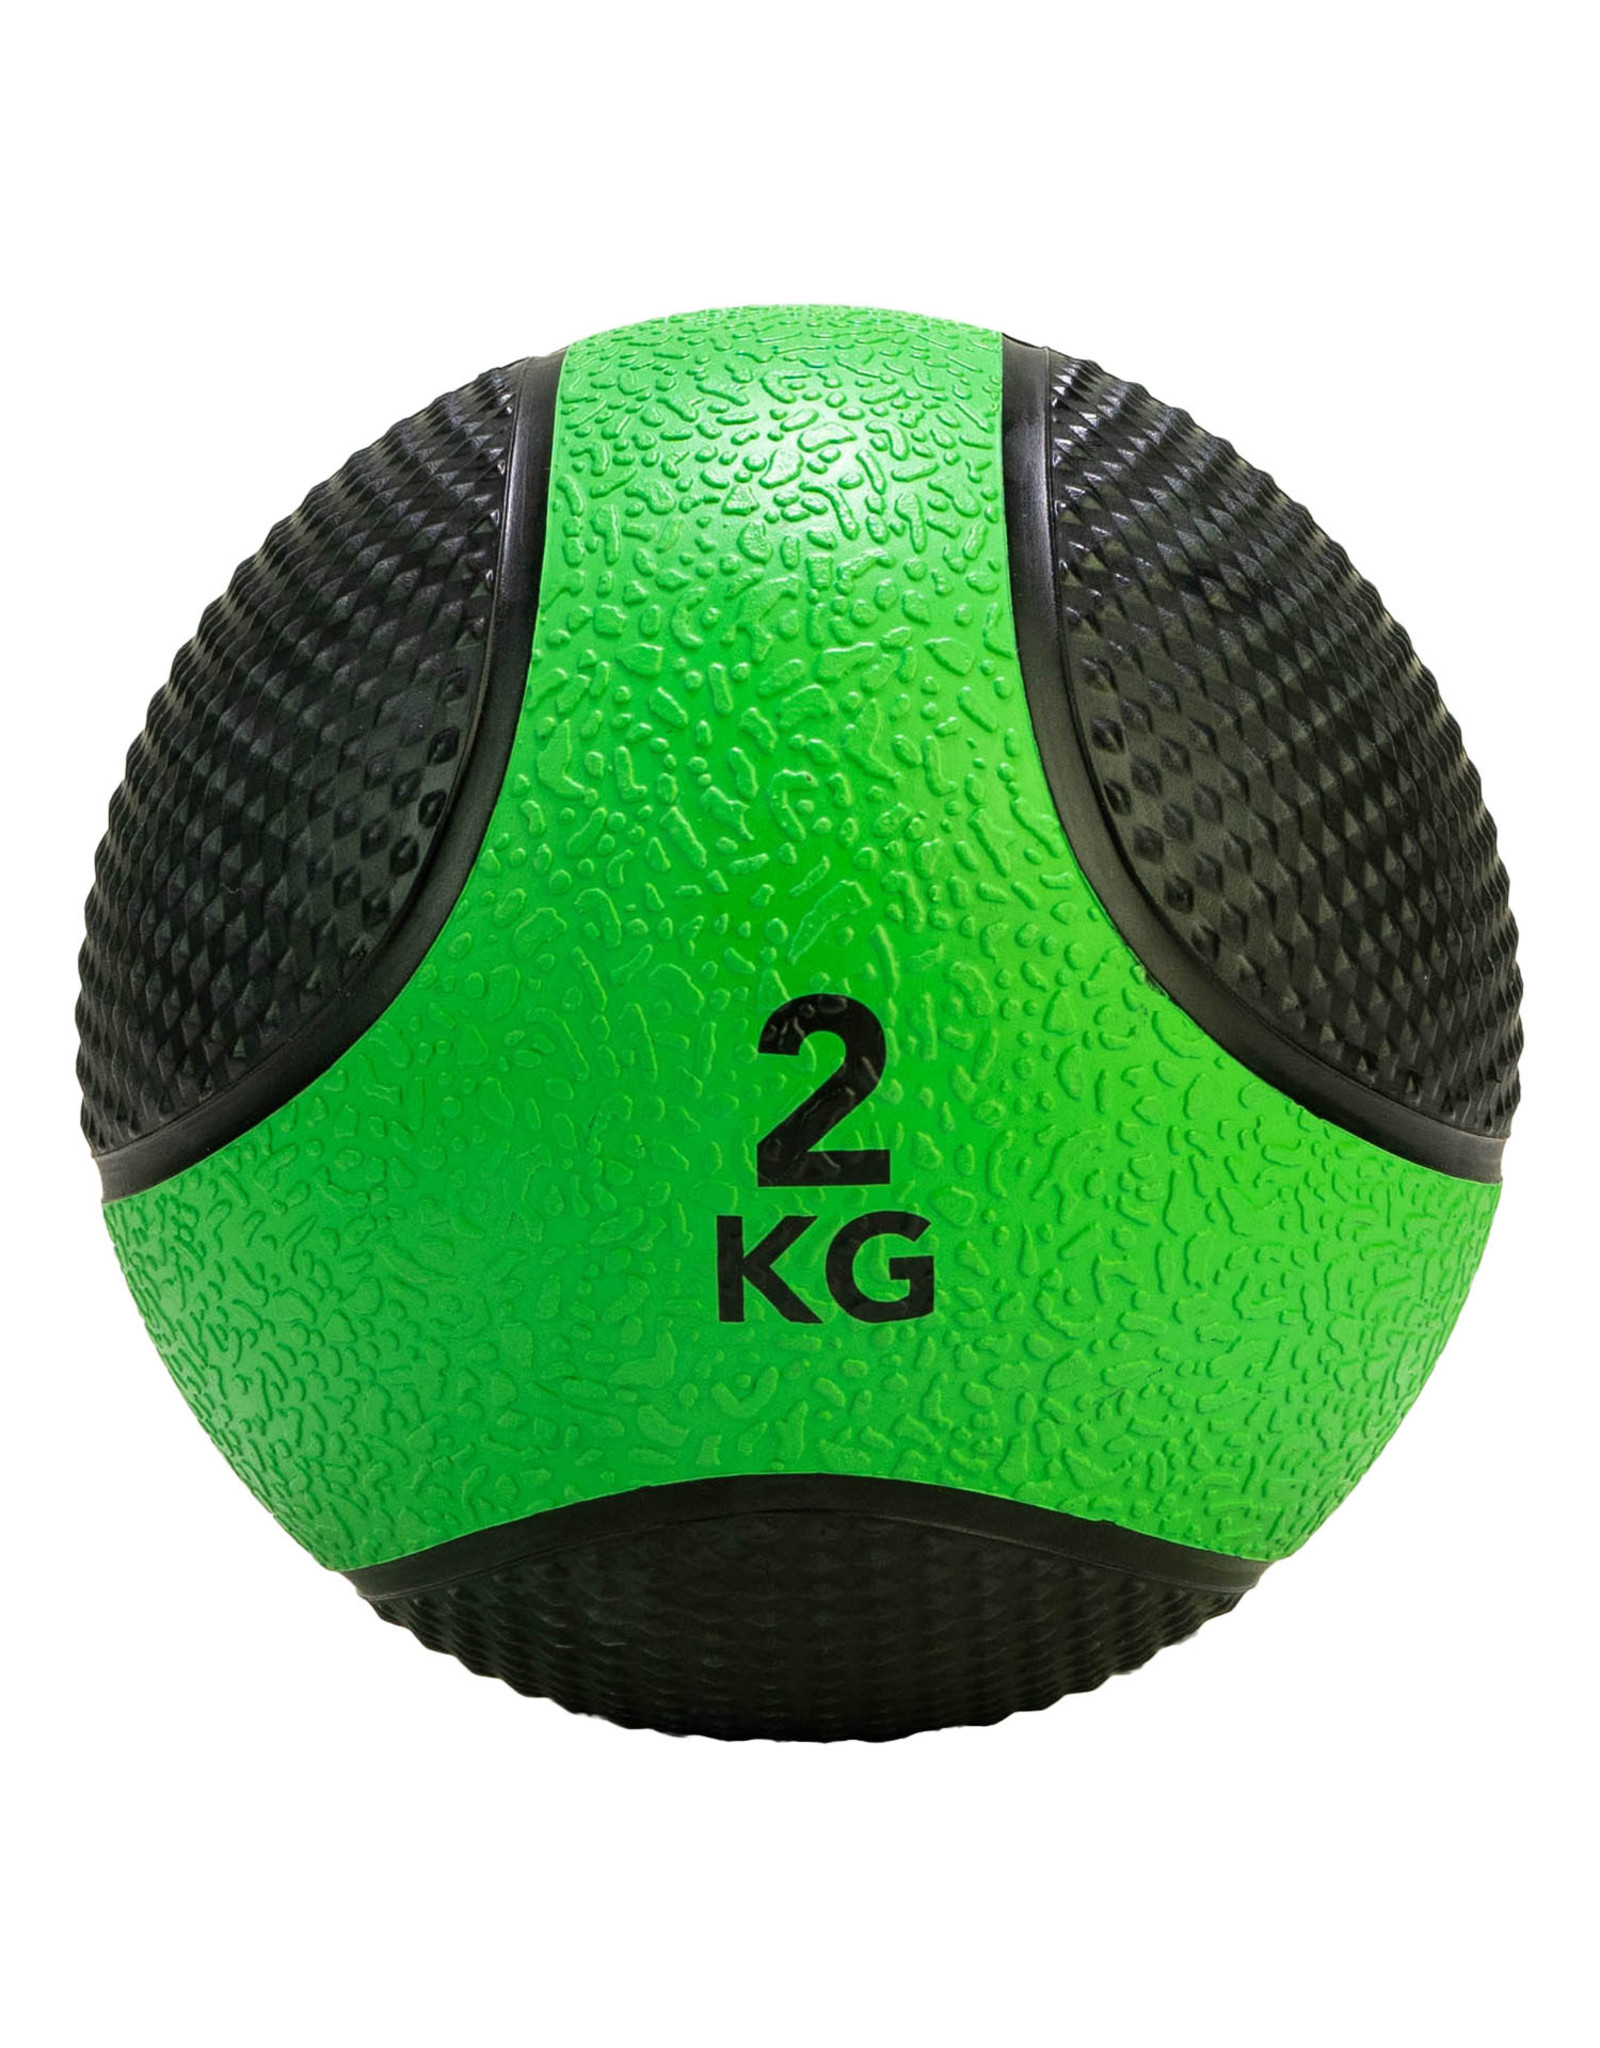 Tunturi Tunturi Medicine Ball 2kg, Green/Black